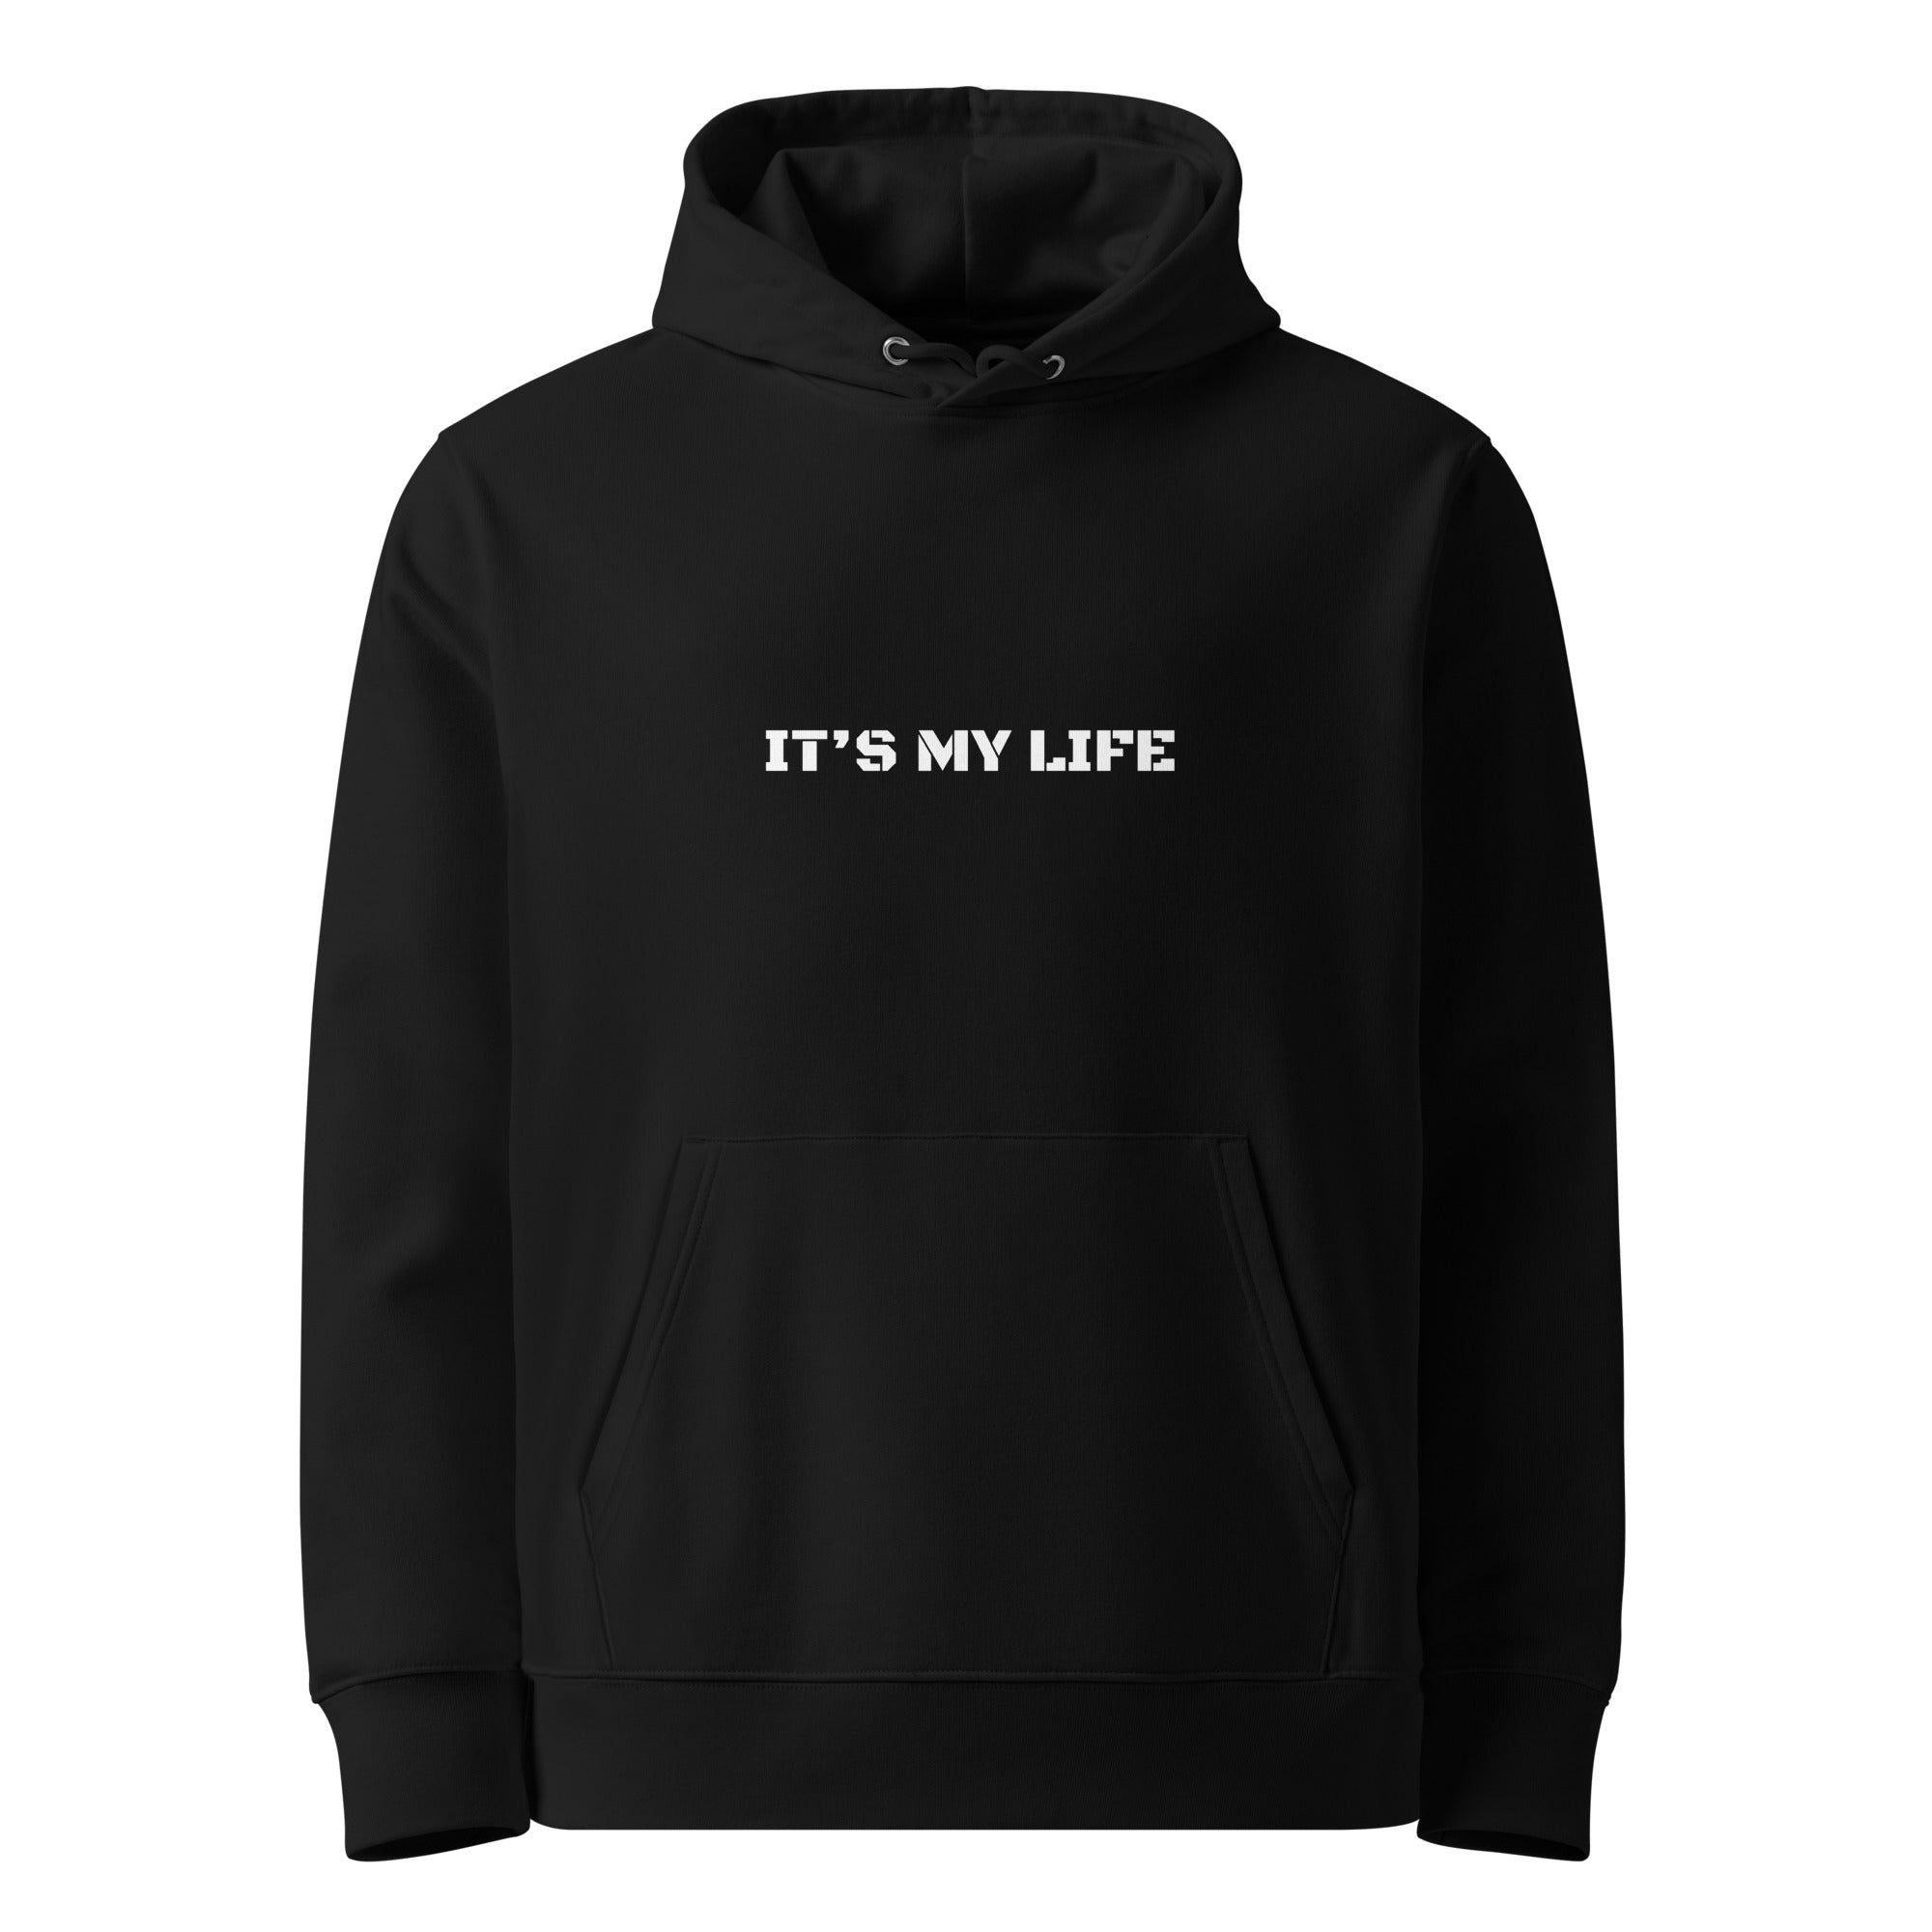 HOODIE MB black Unisex "It's my life"